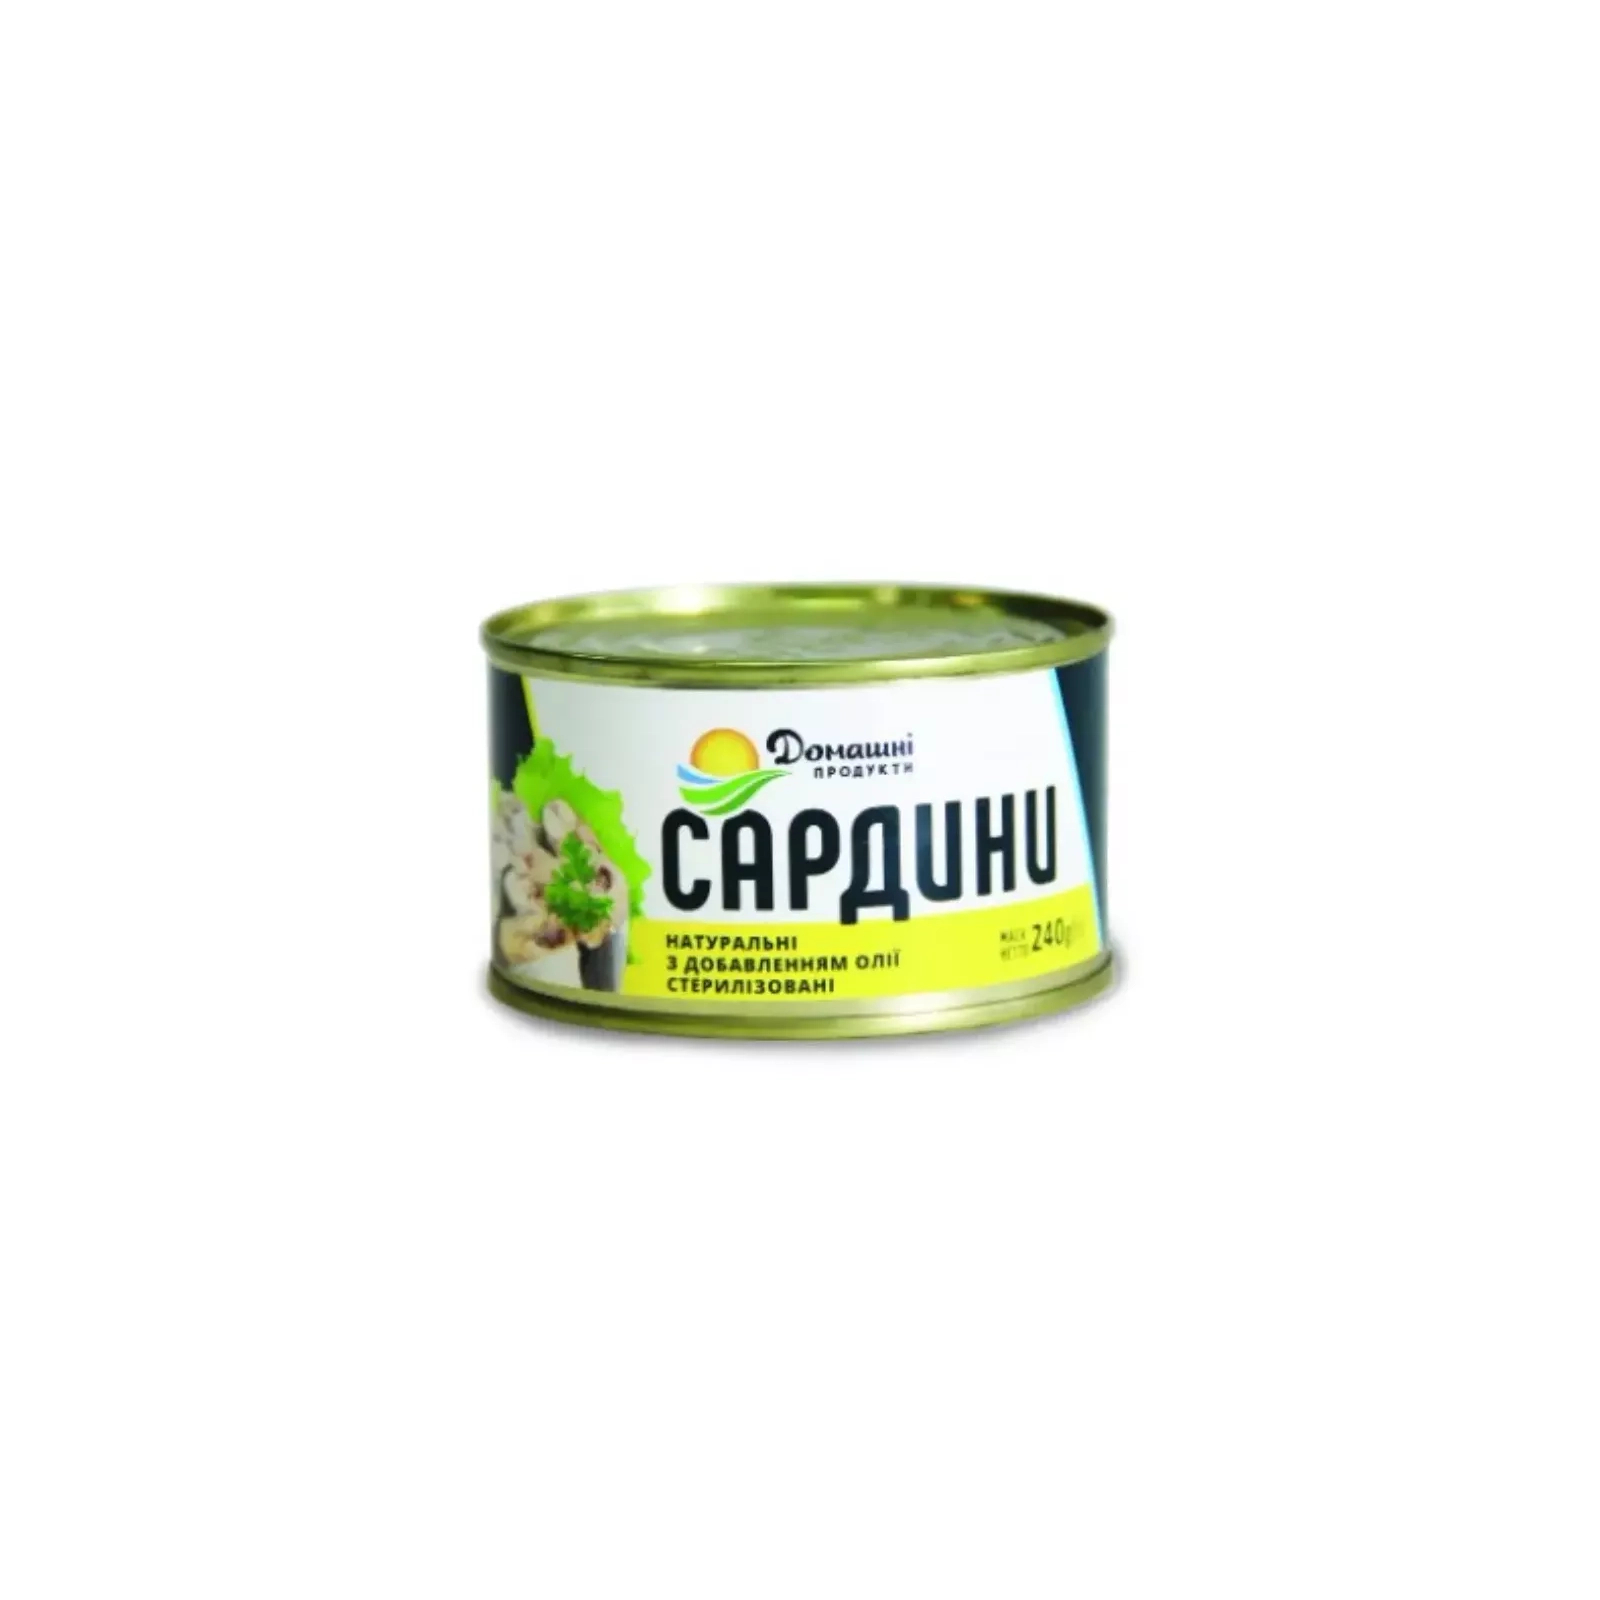 Рибні консерви Домашні продукти Сардини в олії 240 г (4820186120332)